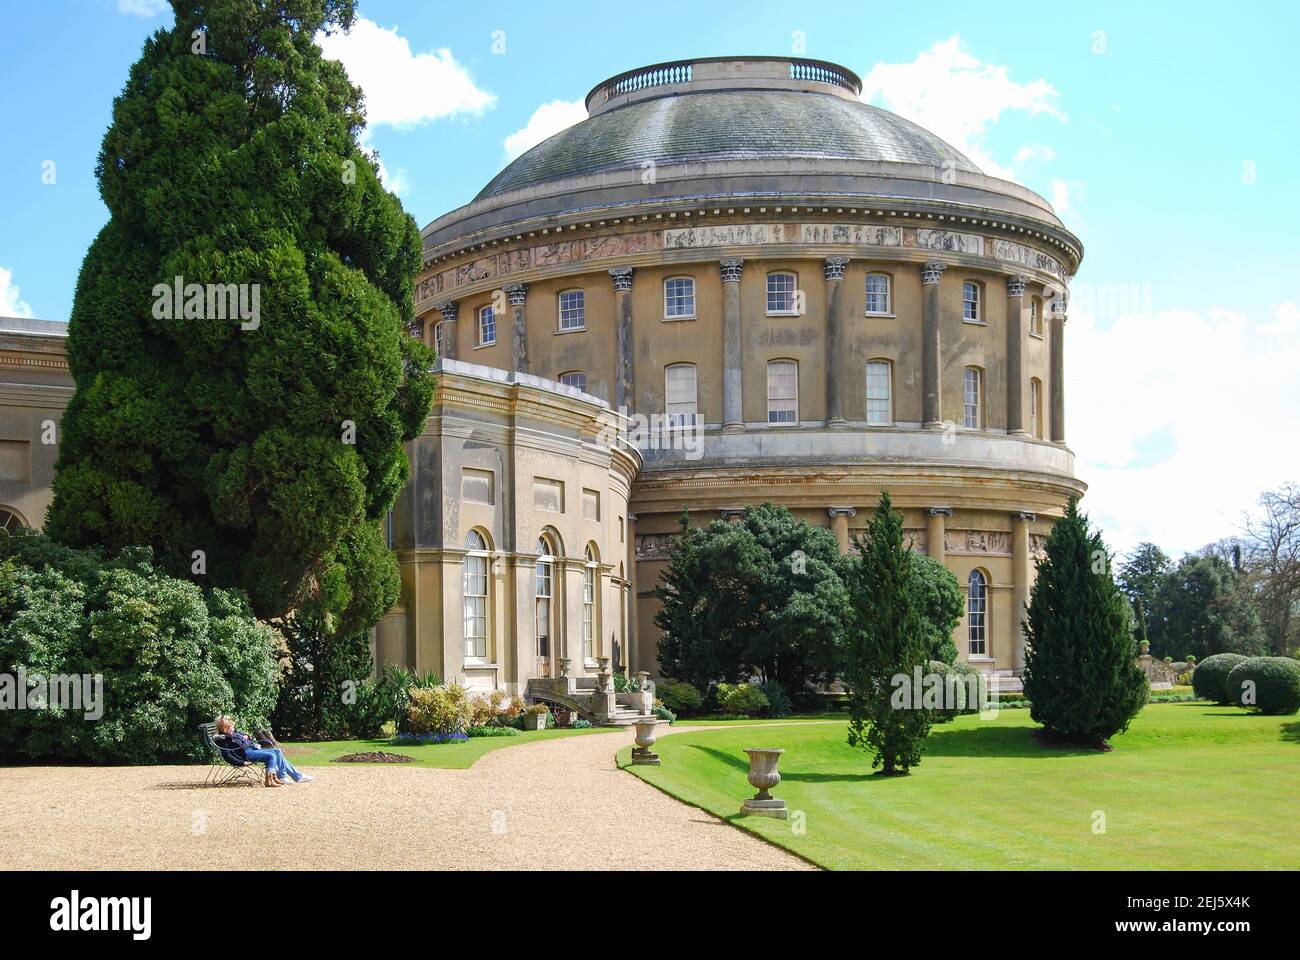 Ickworth House and gardens, Bury St Edmunds, Suffolk, England, United Kingdom Stock Photo